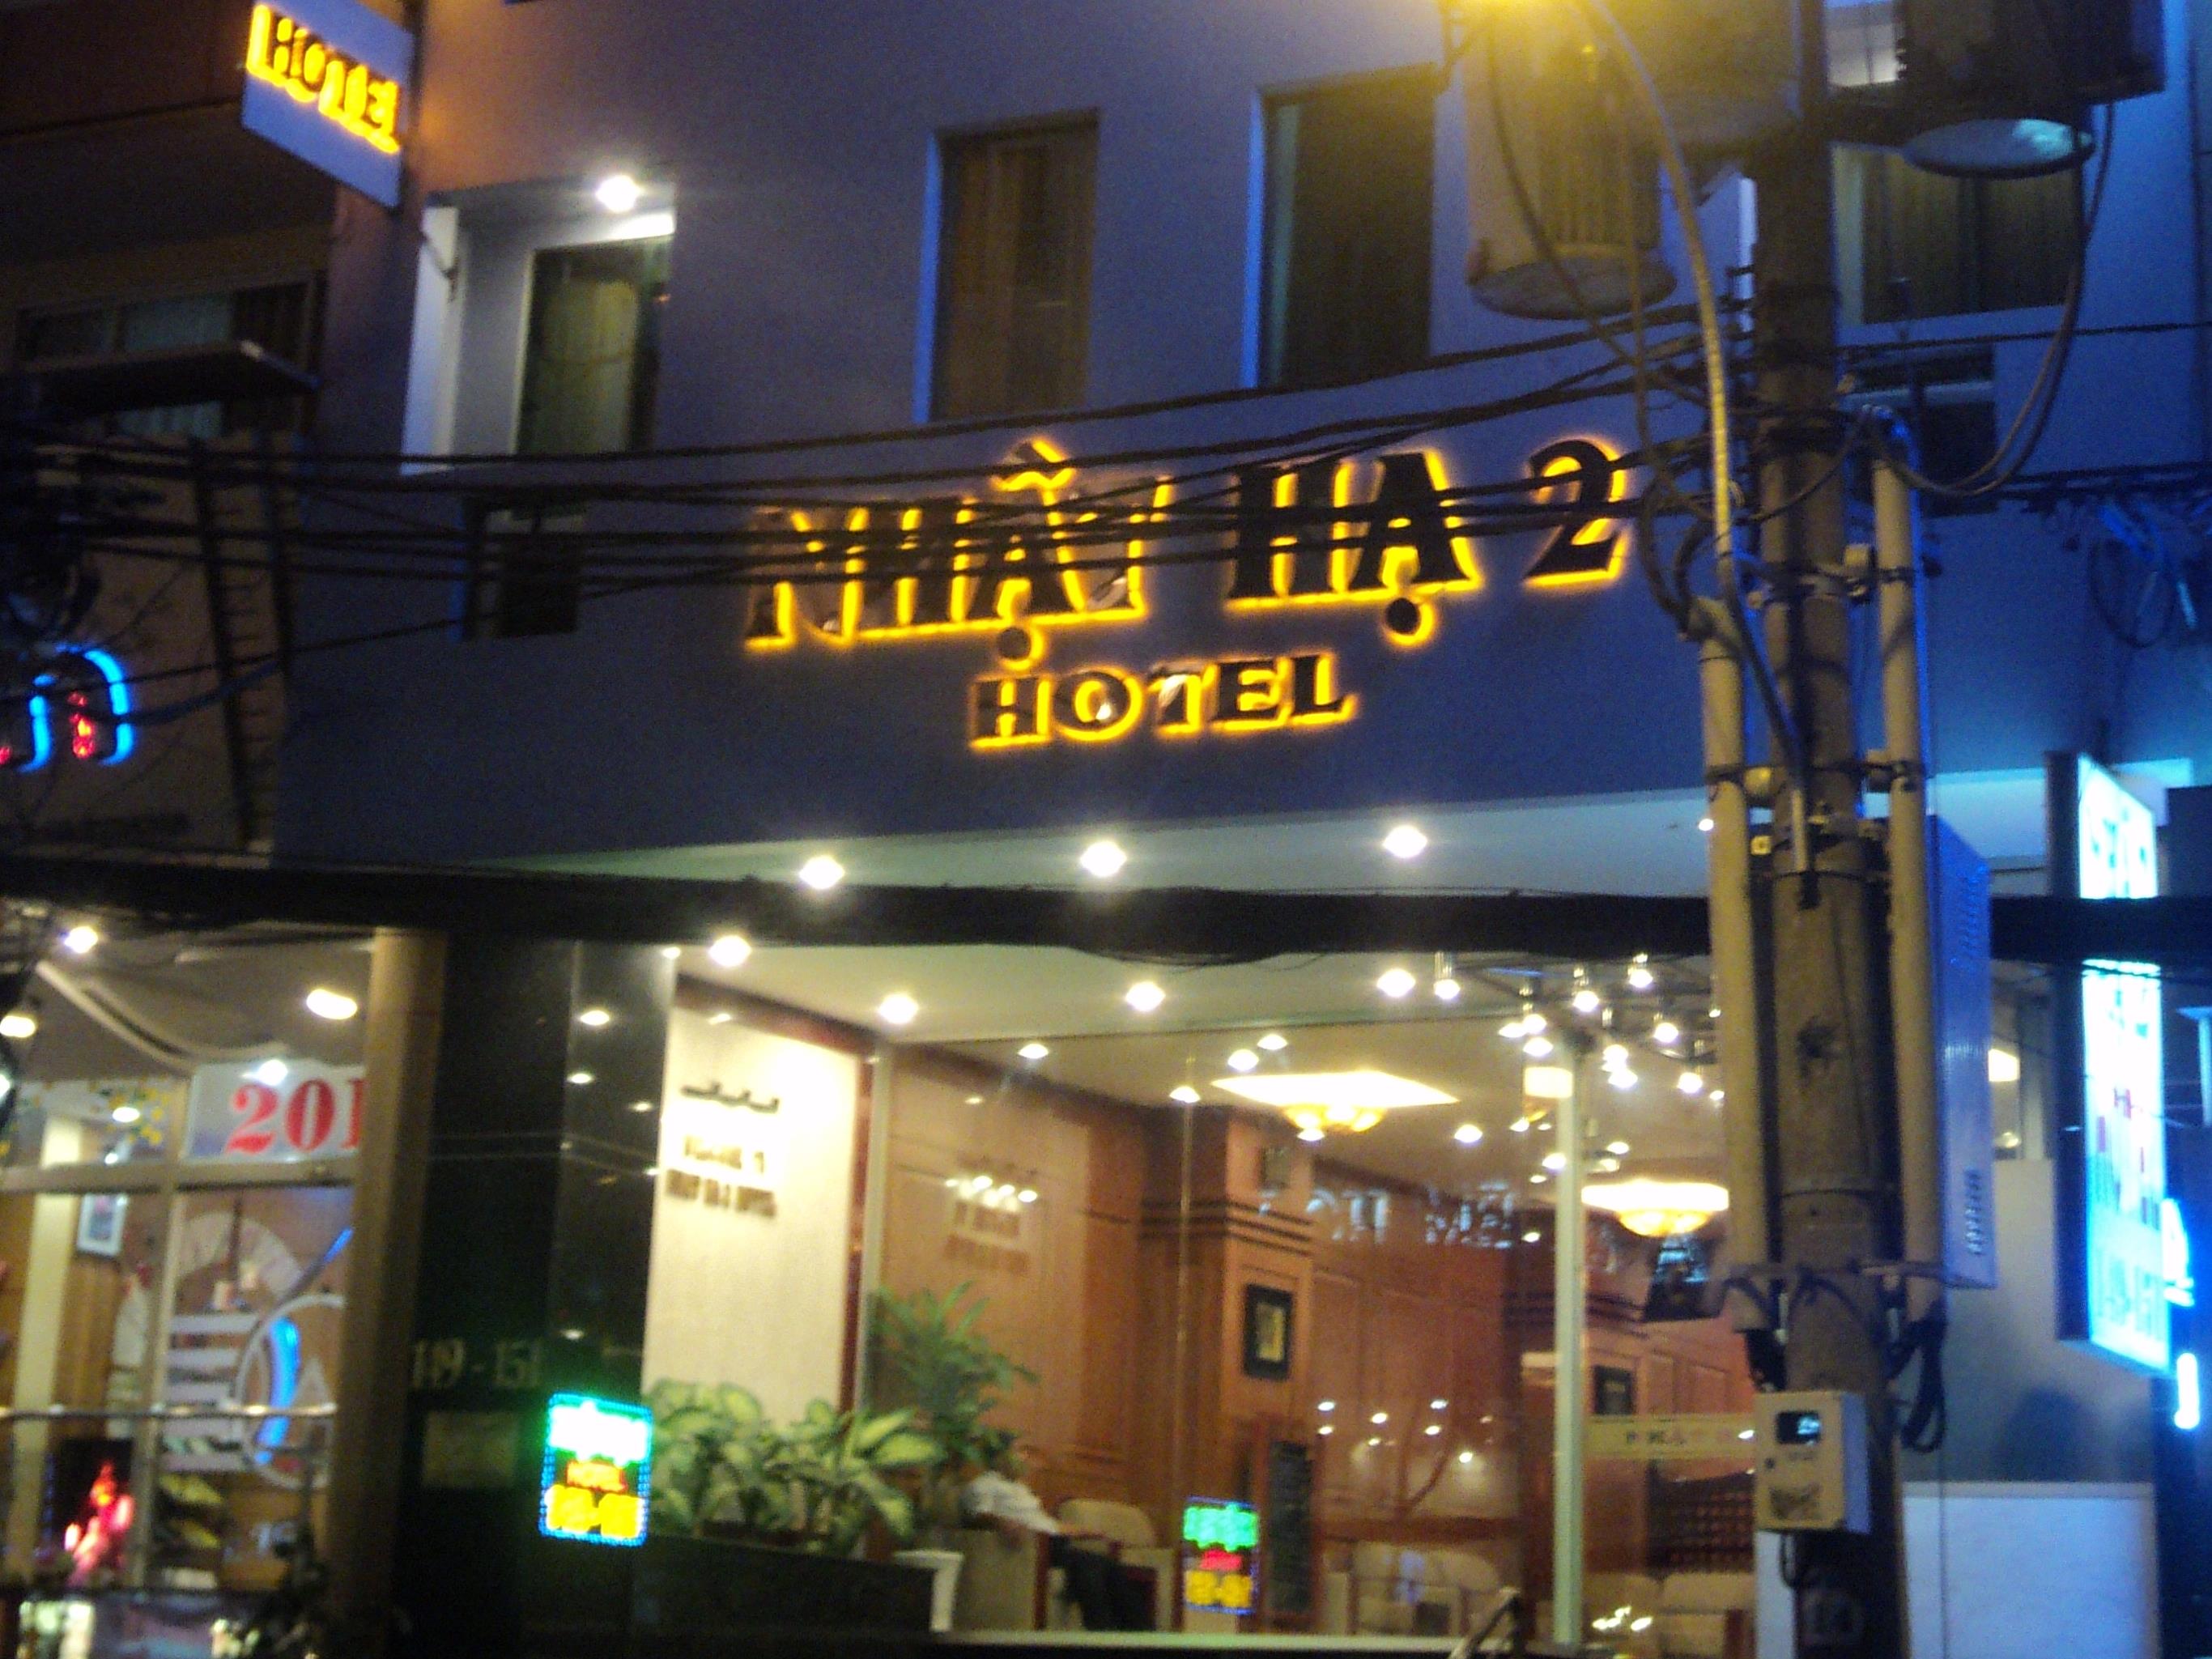 Nhat Ha 2 Hotel - Hotell och Boende i Vietnam , Ho Chi Minh City